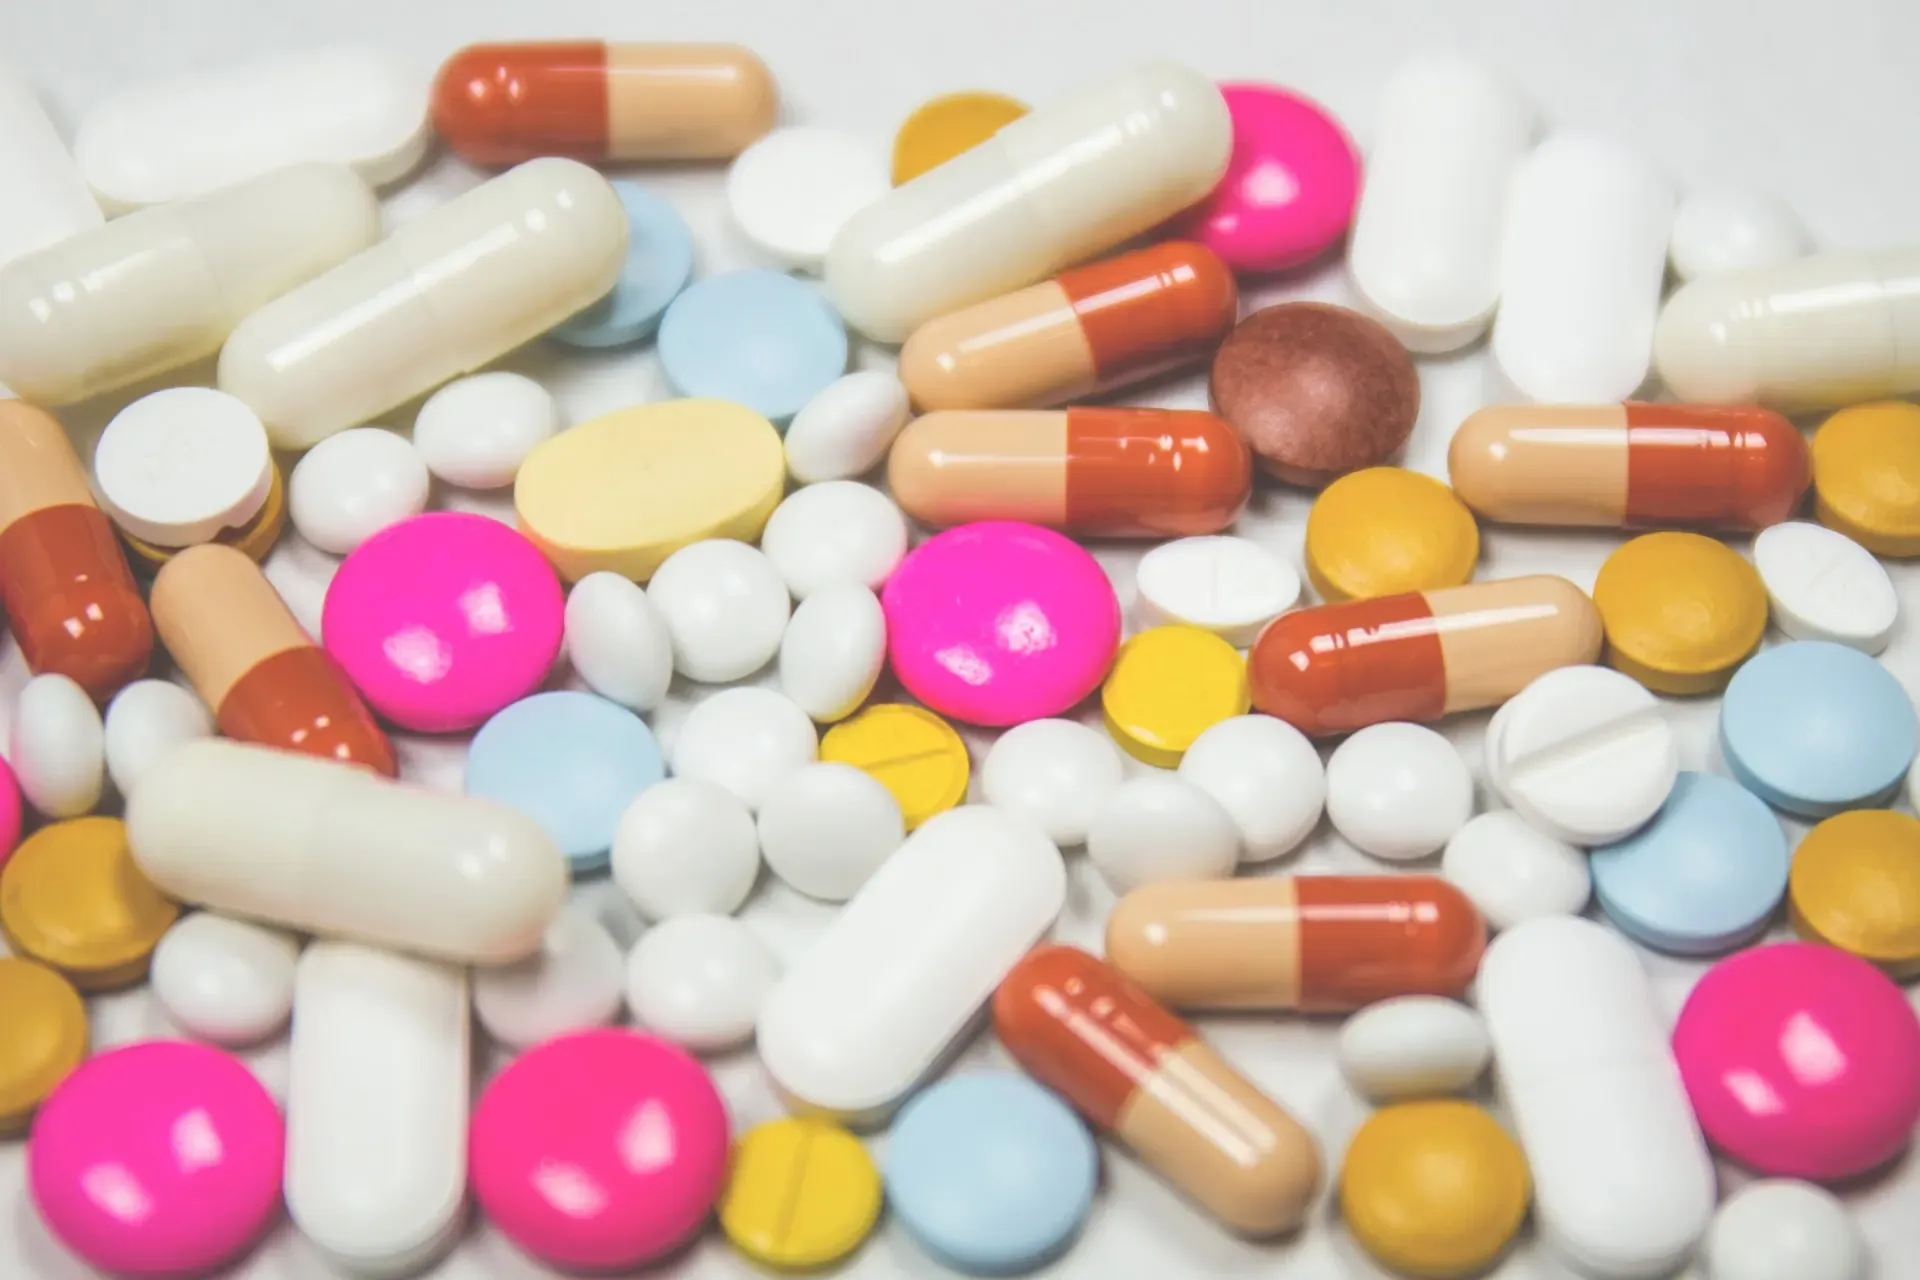 RPP Niekontrolowane przepisywanie leków na receptę może stanowić zagrożenie dla zdrowia pacjentów